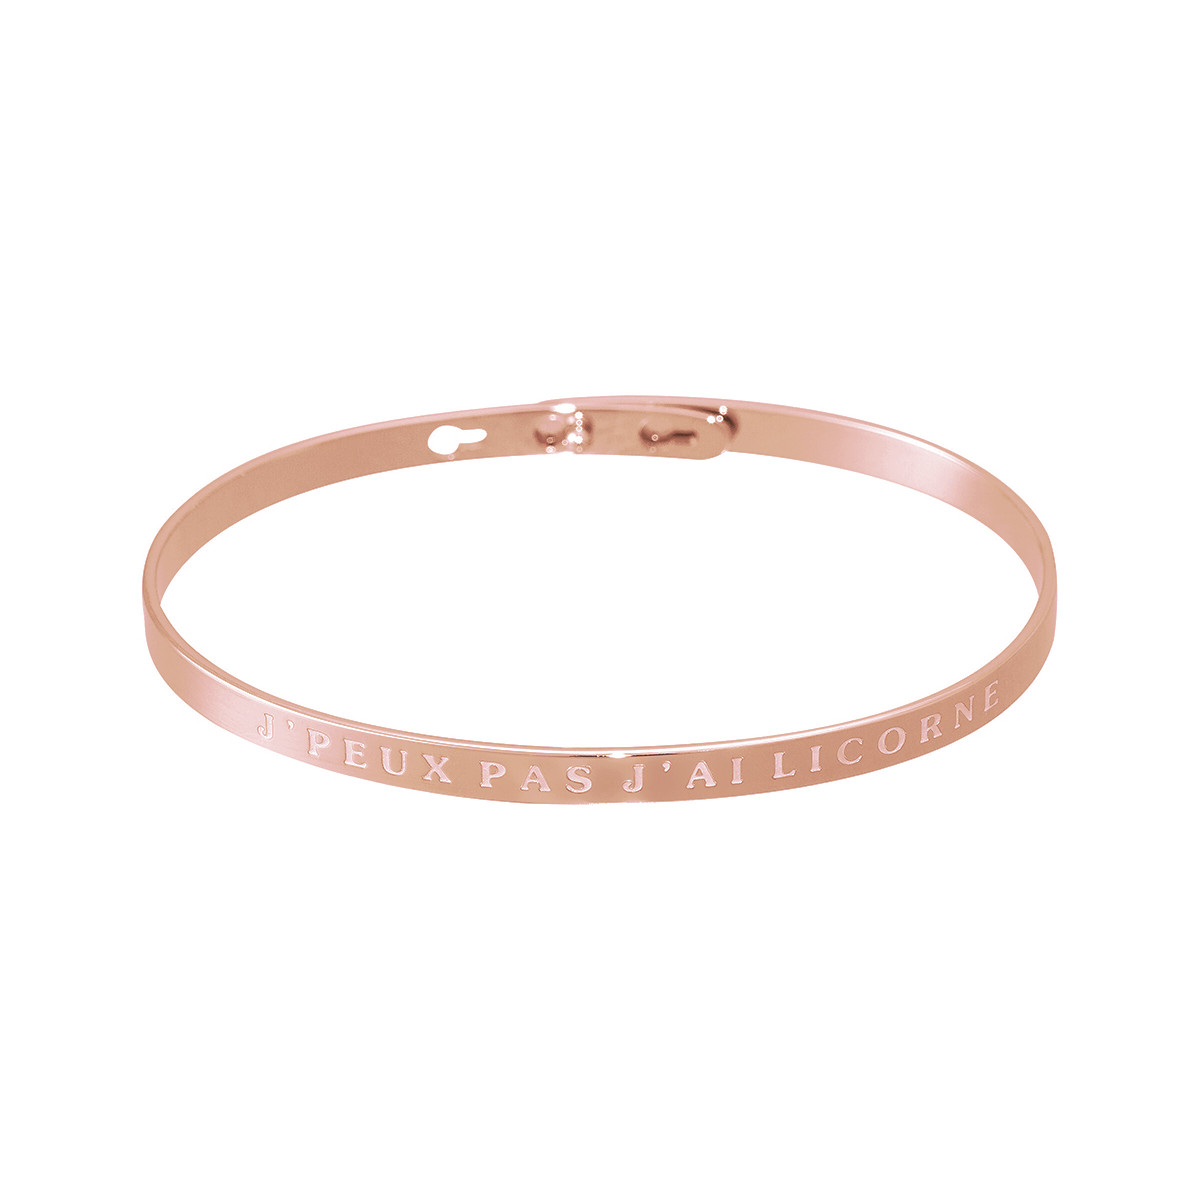 "J'PEUX PAS J'AI LICORNE" bracelet jonc rosé à message